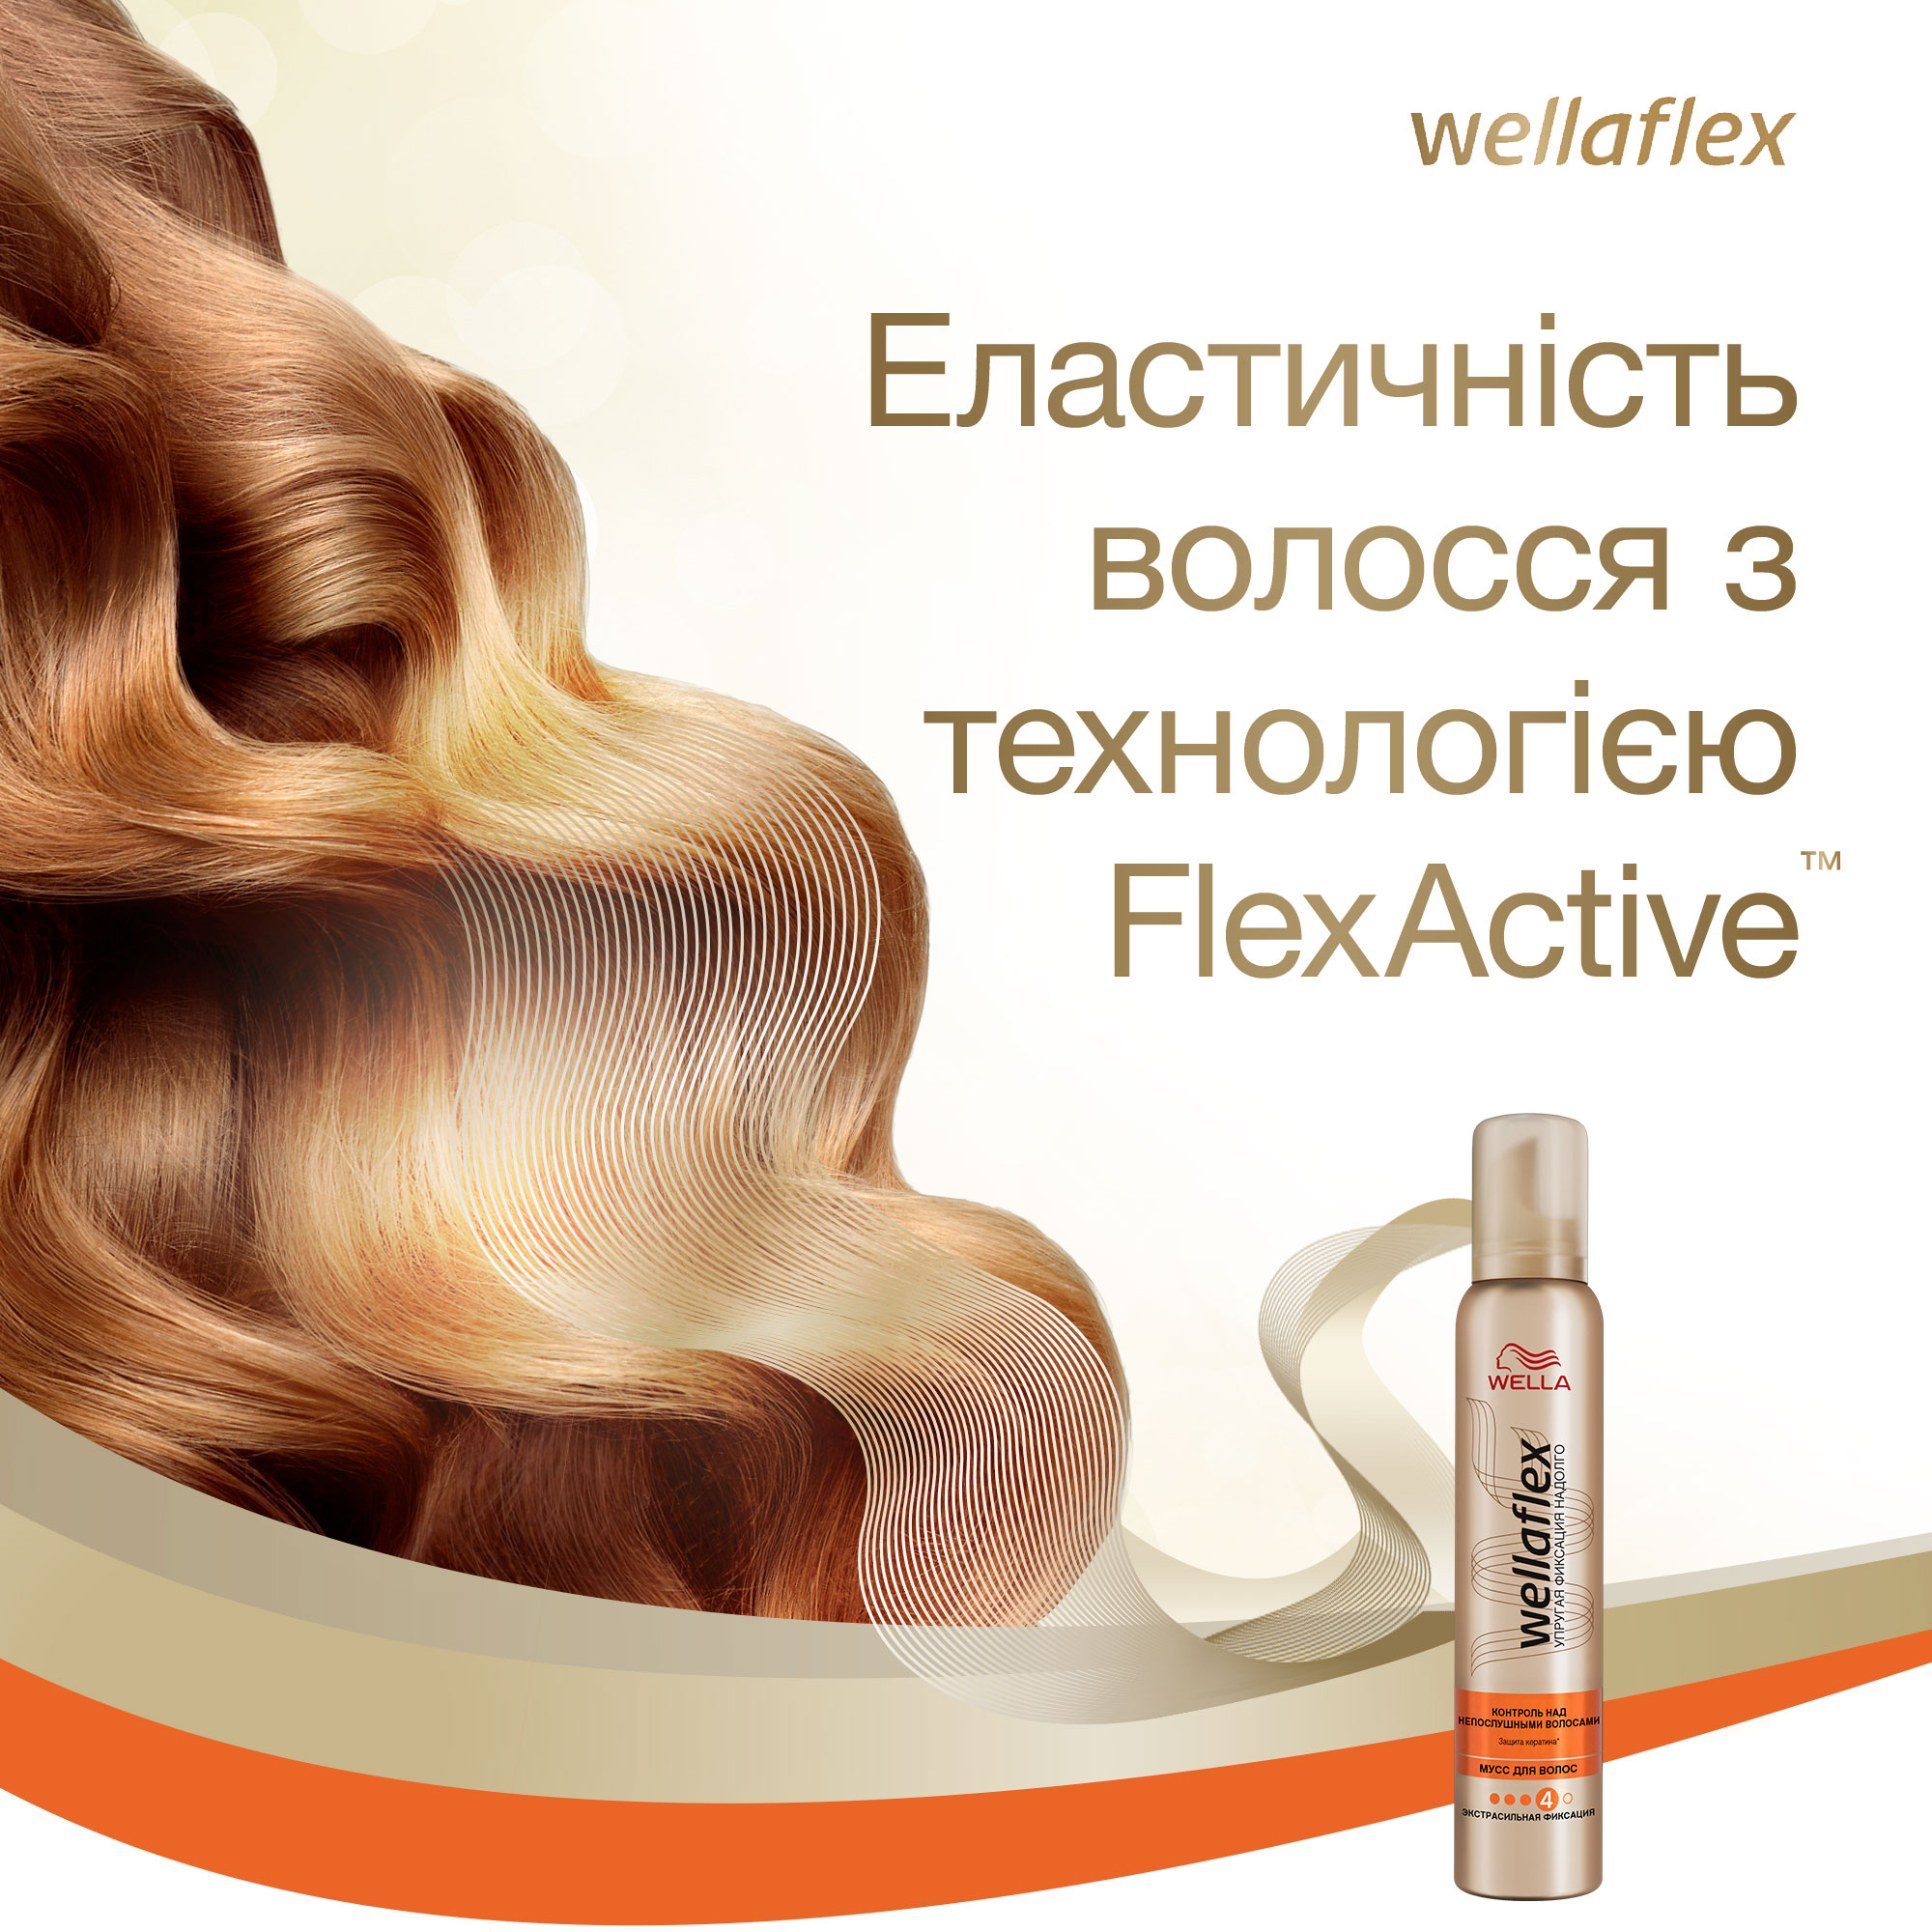 Мусс для волос Wellaflex Контроль над непослушными волосами Экстрасильной фиксации, 200 мл - фото 5